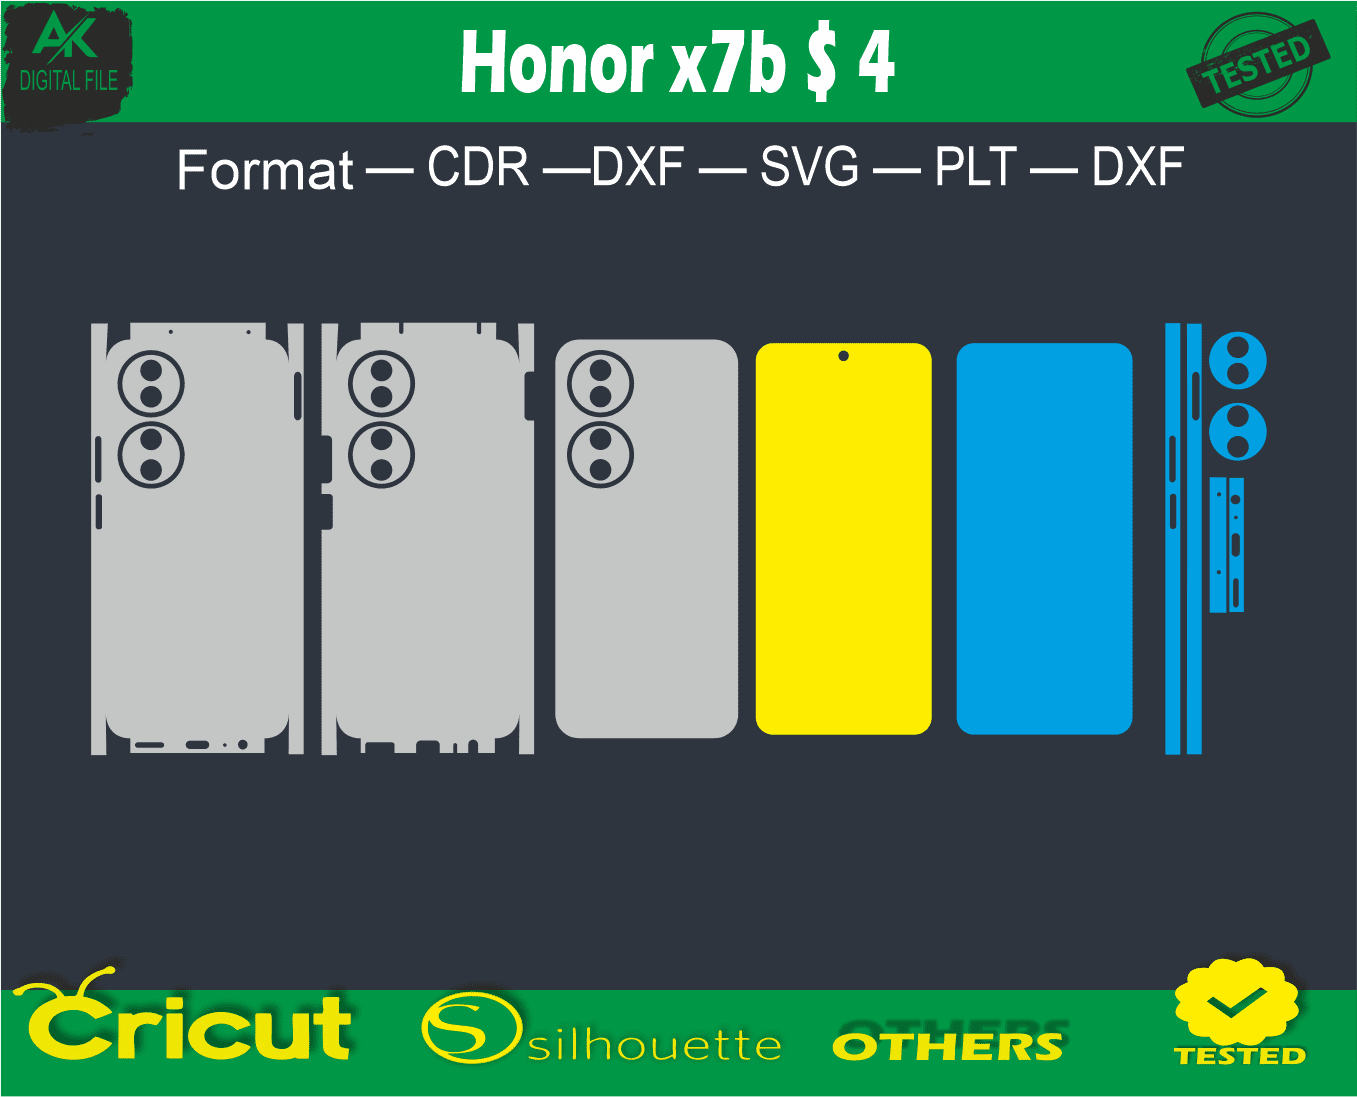 Honor x7b